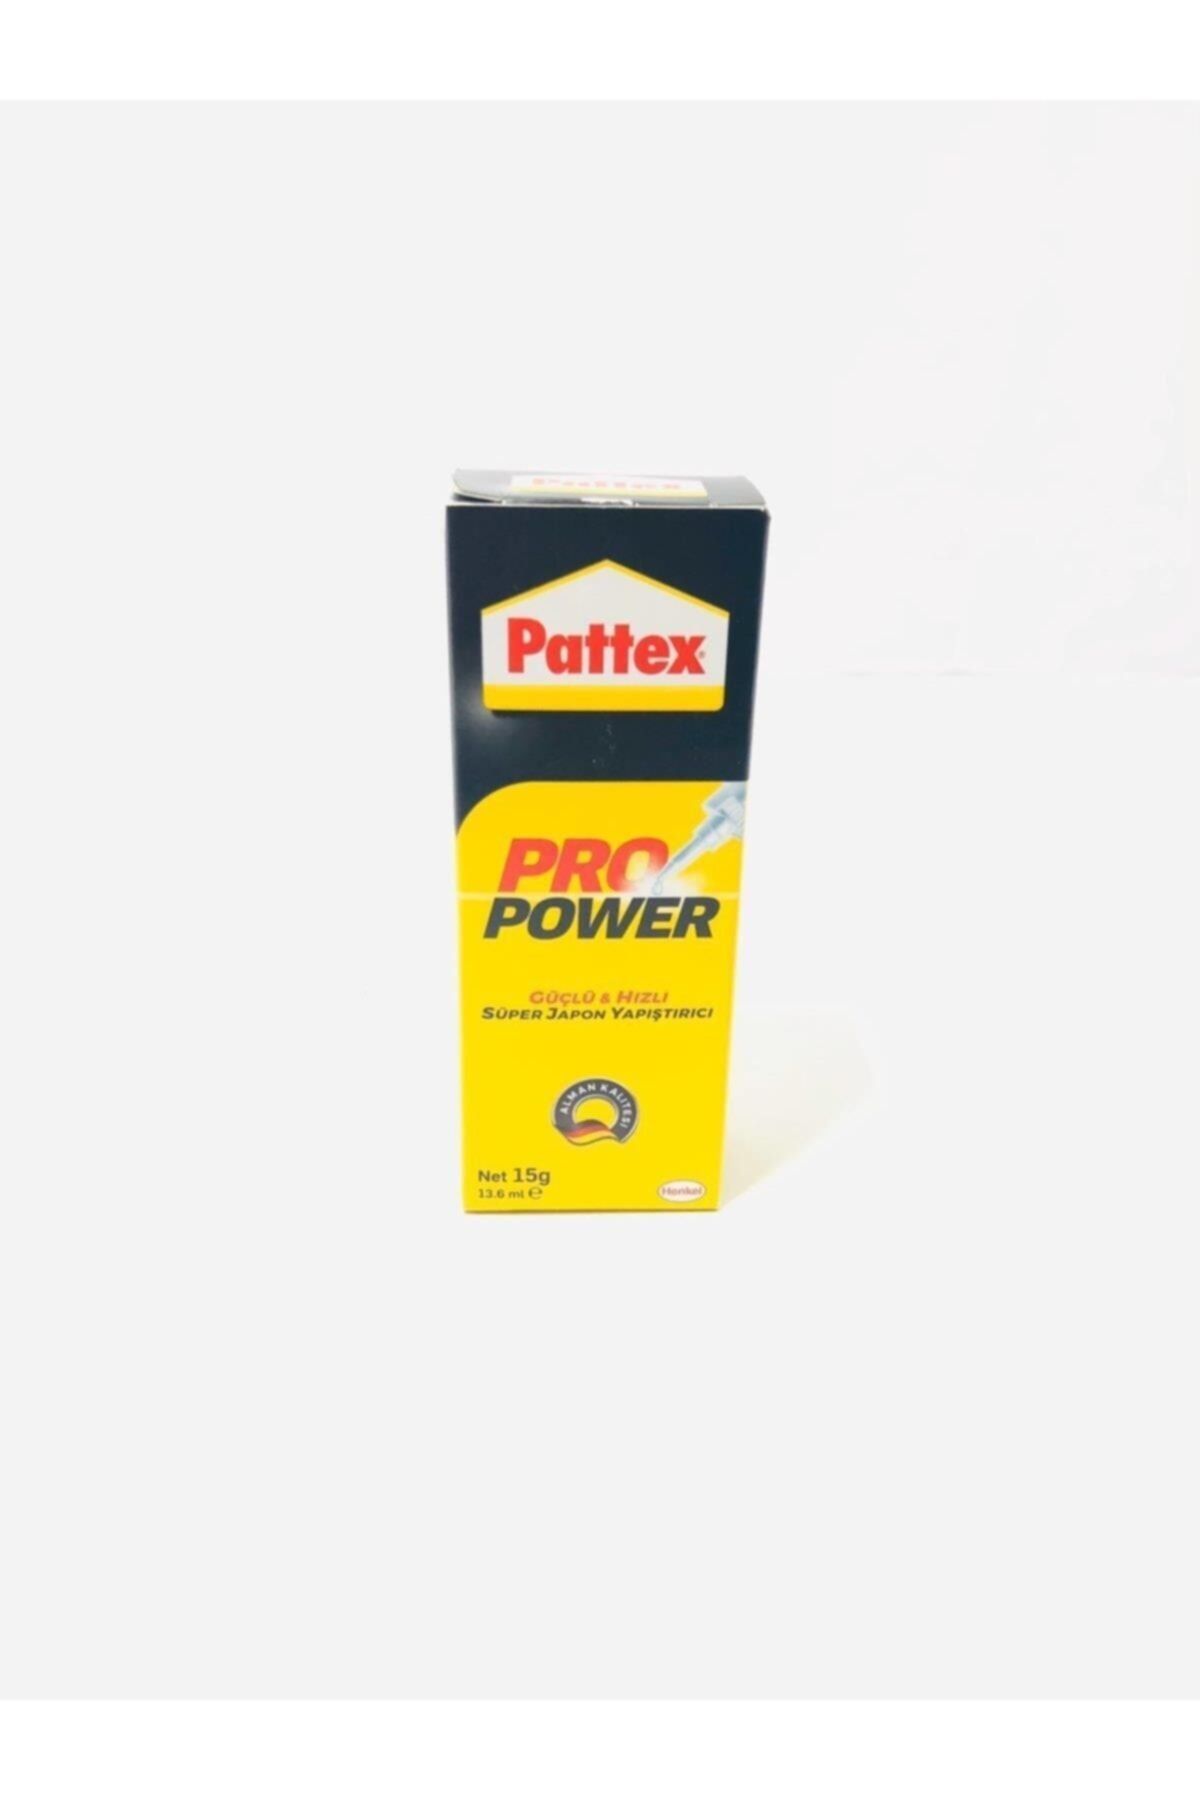 Pattex Pro Power Süper Hızlı Japon Yapıştırıcı